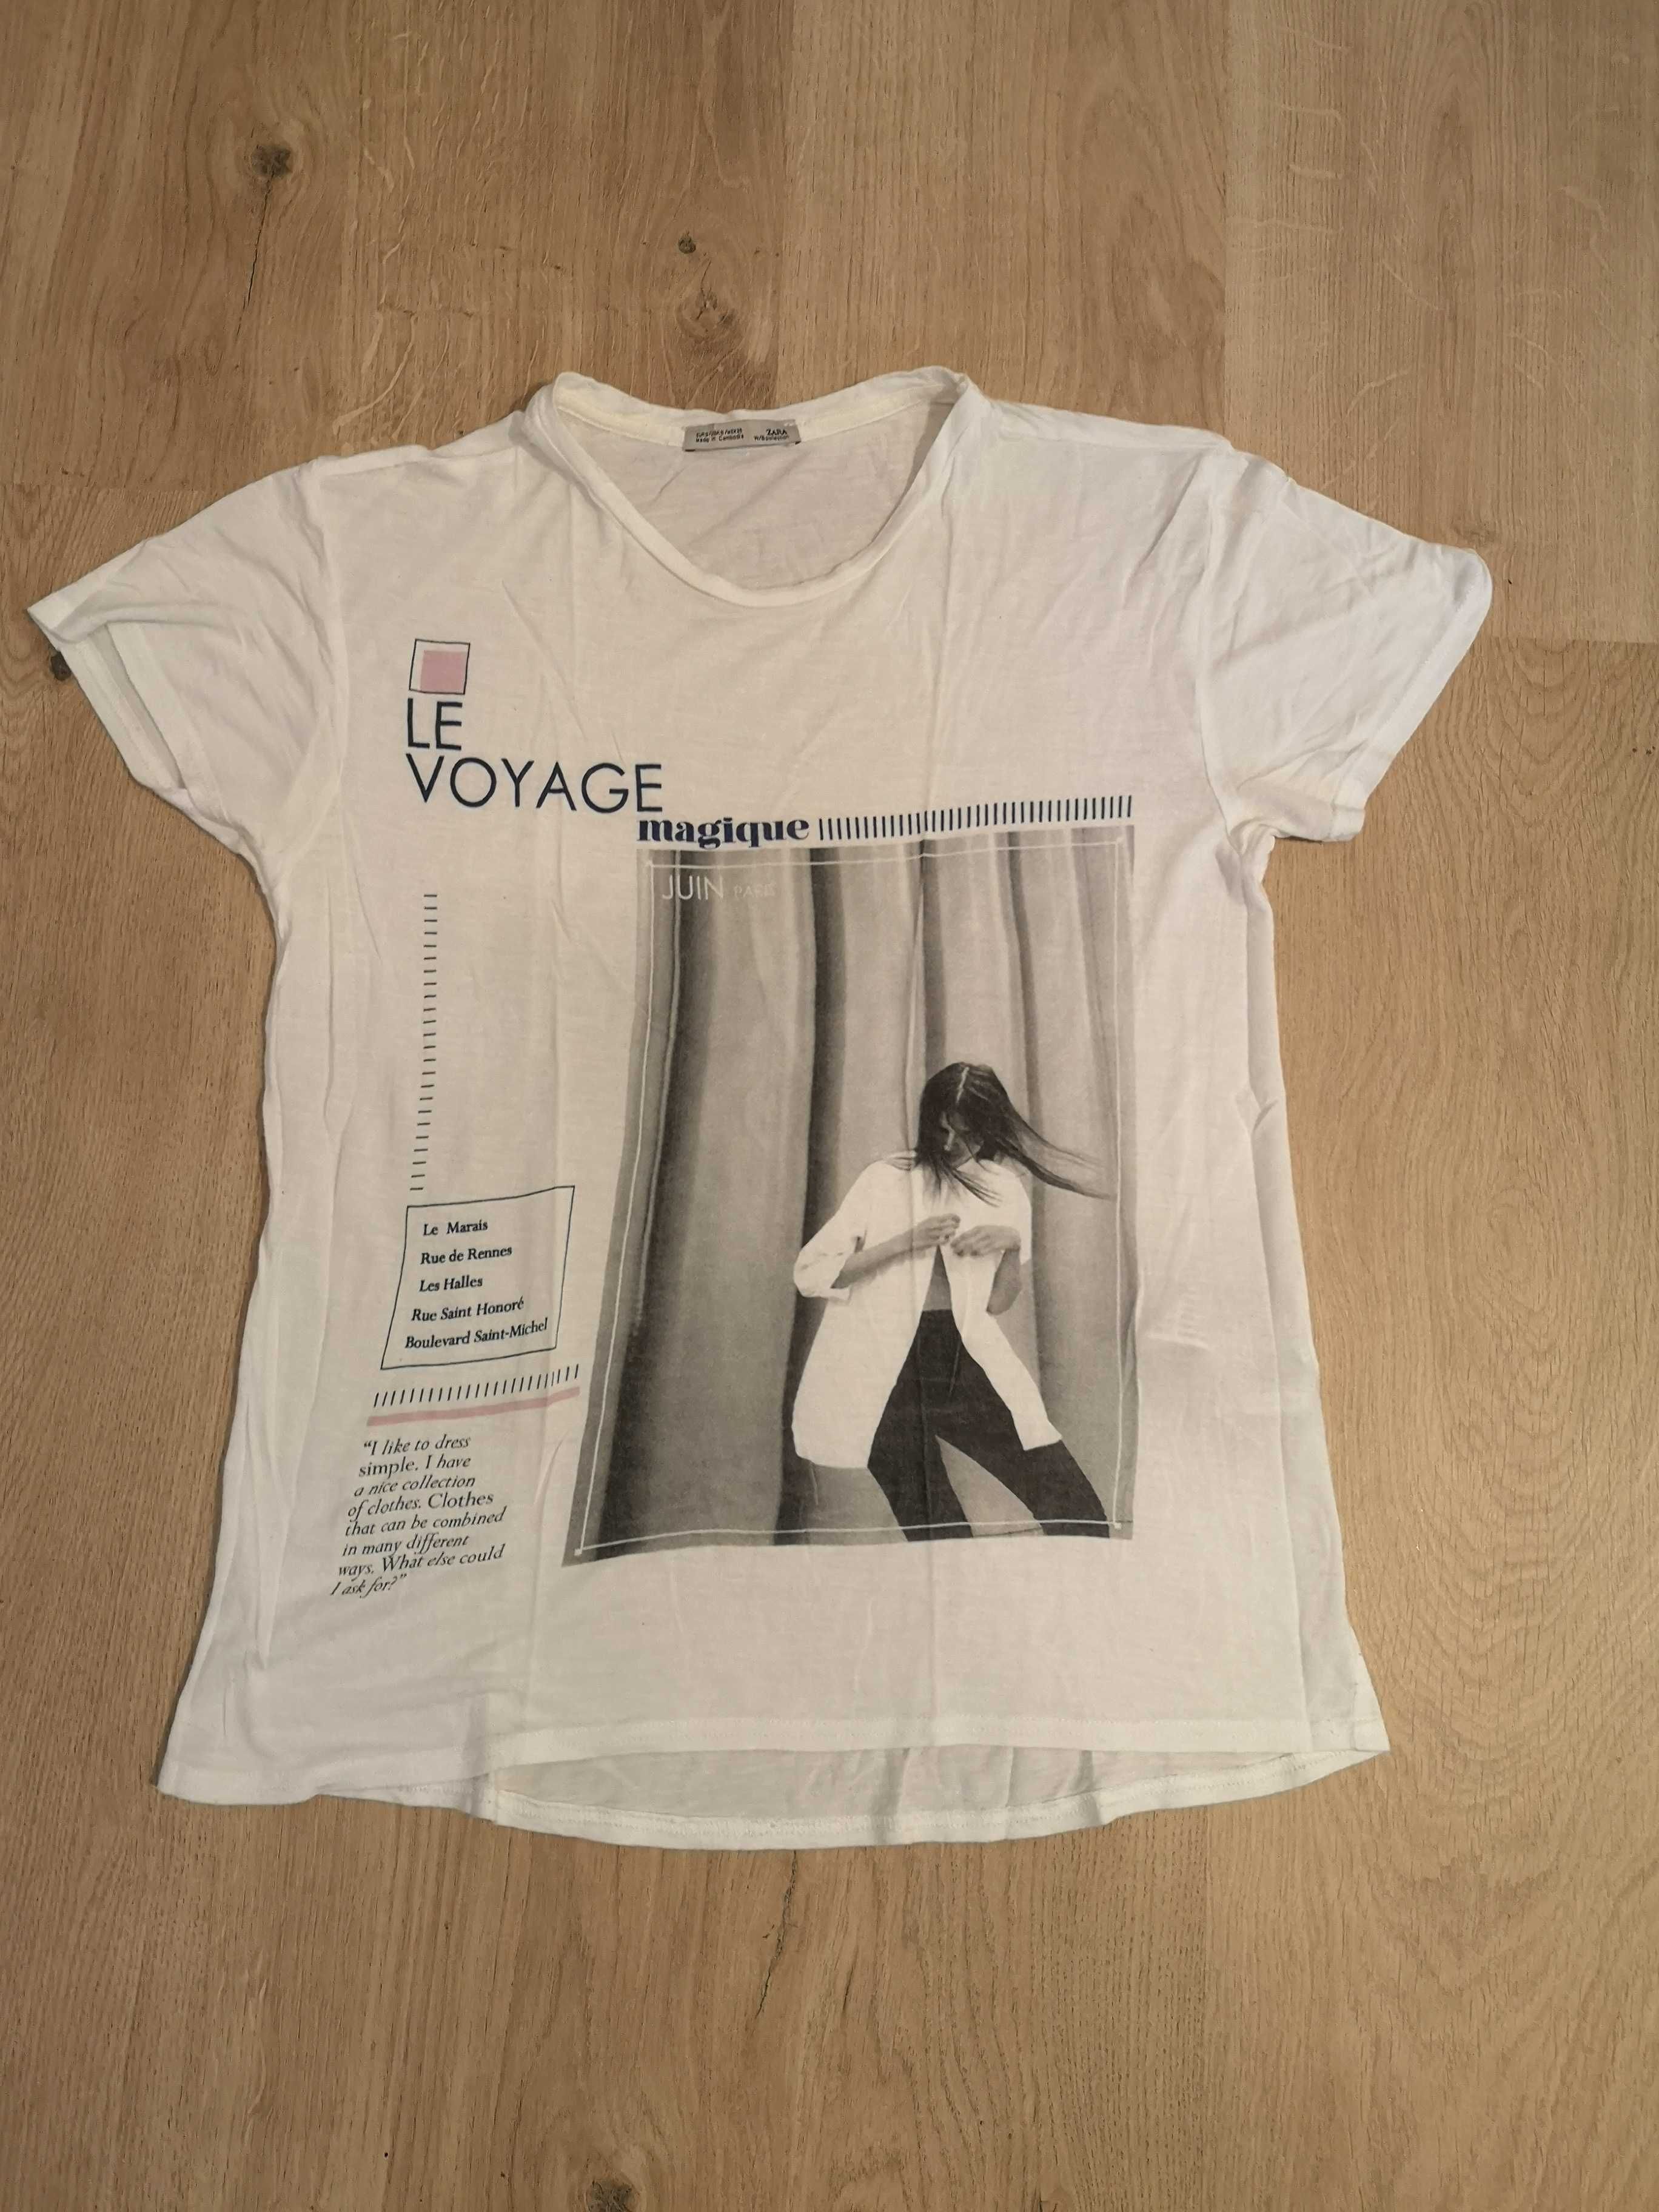 ZARA t-shirt biały logo Le Voyage r. 36/S